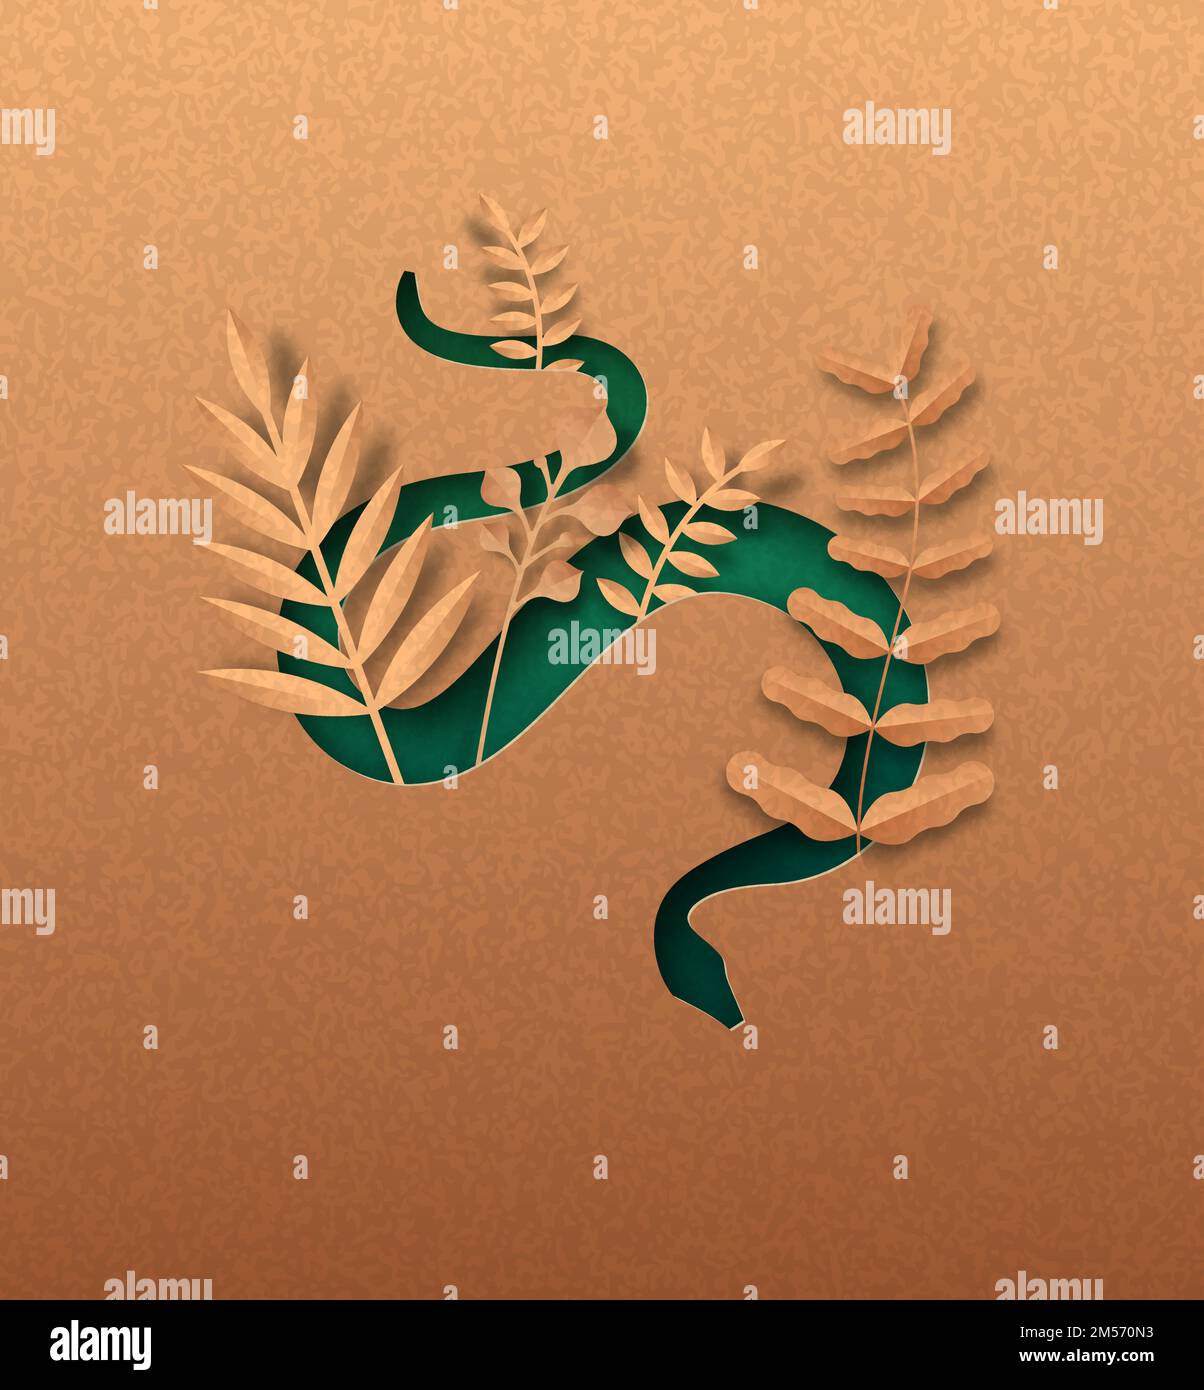 Serpente verde animale isolato silhouette in papercut con foglia di pianta tropicale all'interno. Taglio della visper della carta riciclata. Conservazione della fauna selvatica, giungla pr Illustrazione Vettoriale